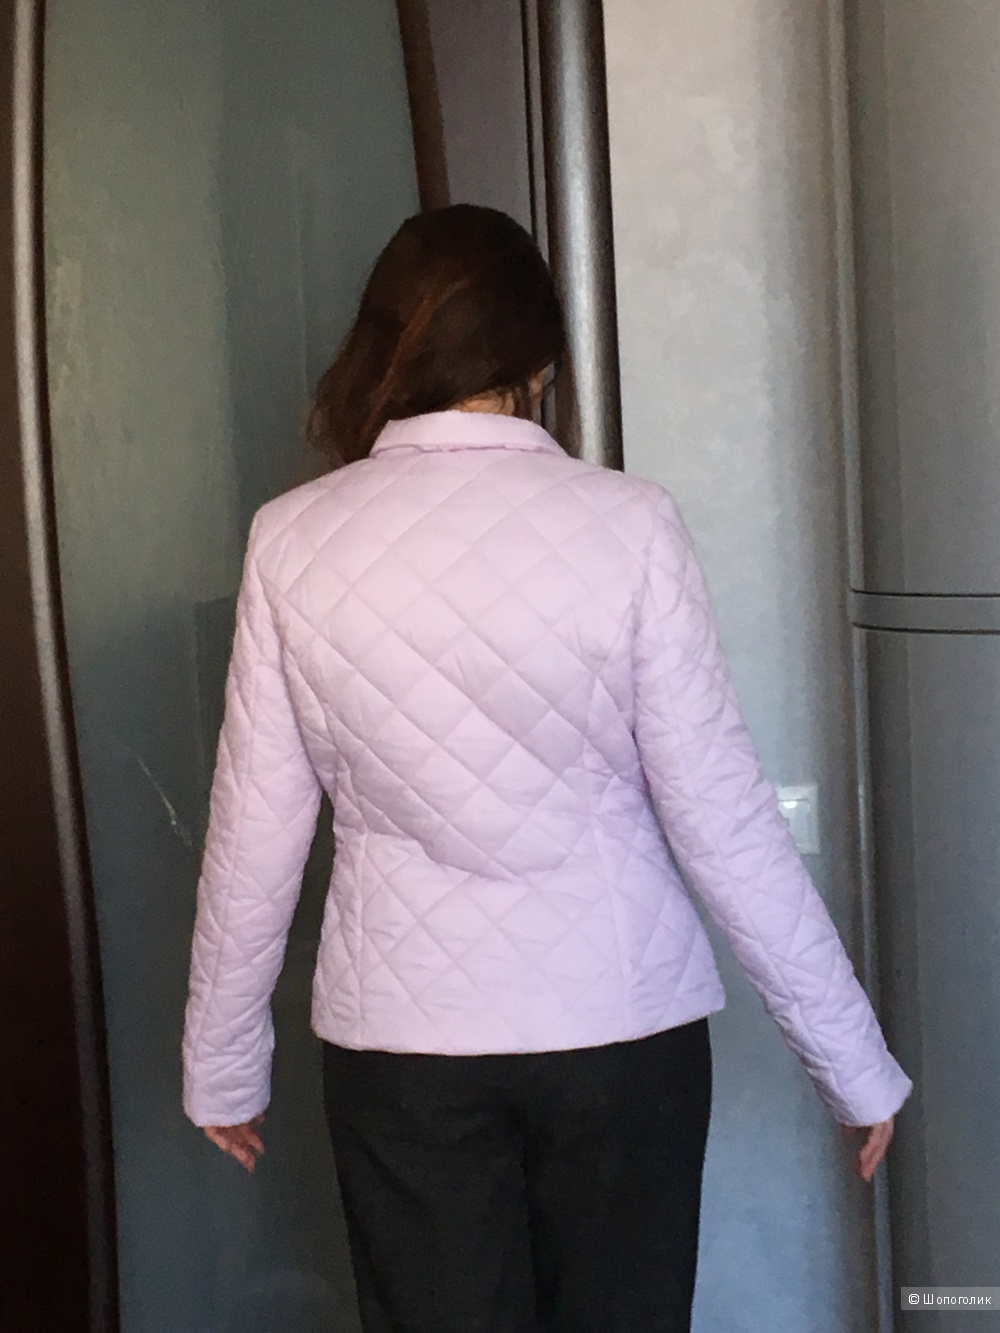 Куртка-жакет ODRI MIO, из весенней коллекции 2017 года, 42 ит, наш 44, новая